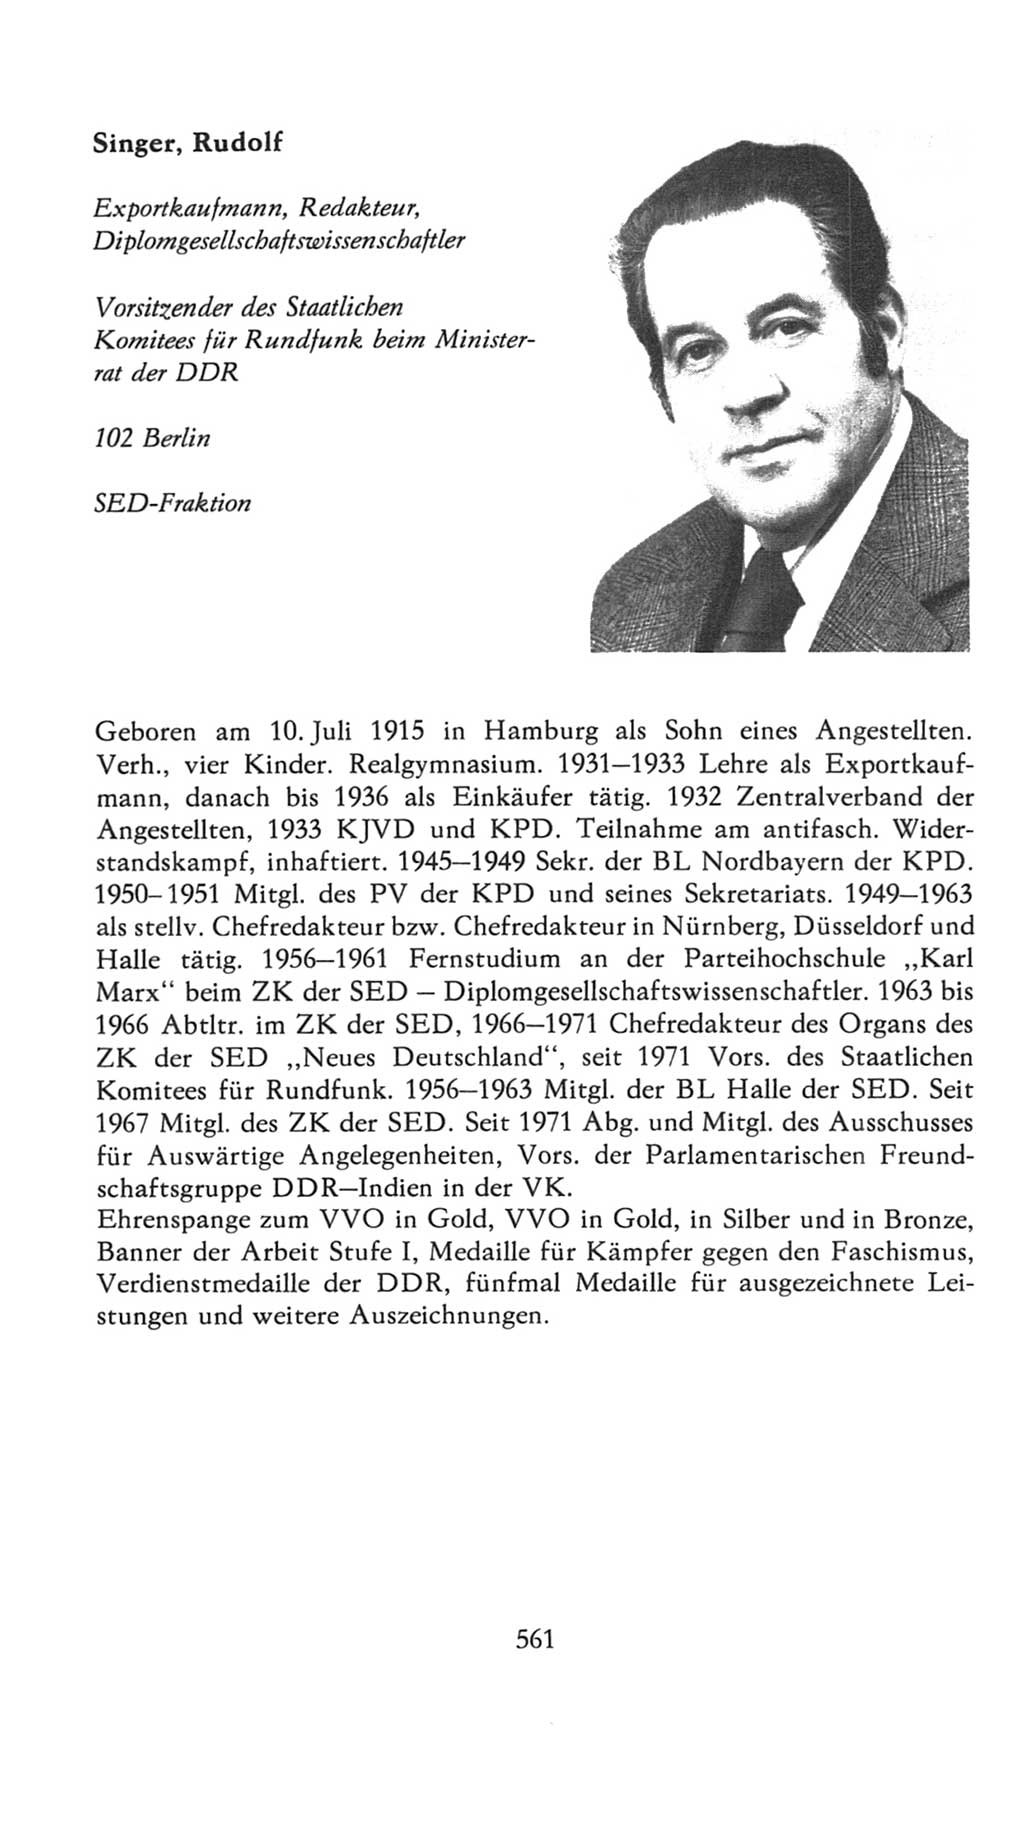 Volkskammer (VK) der Deutschen Demokratischen Republik (DDR), 7. Wahlperiode 1976-1981, Seite 561 (VK. DDR 7. WP. 1976-1981, S. 561)